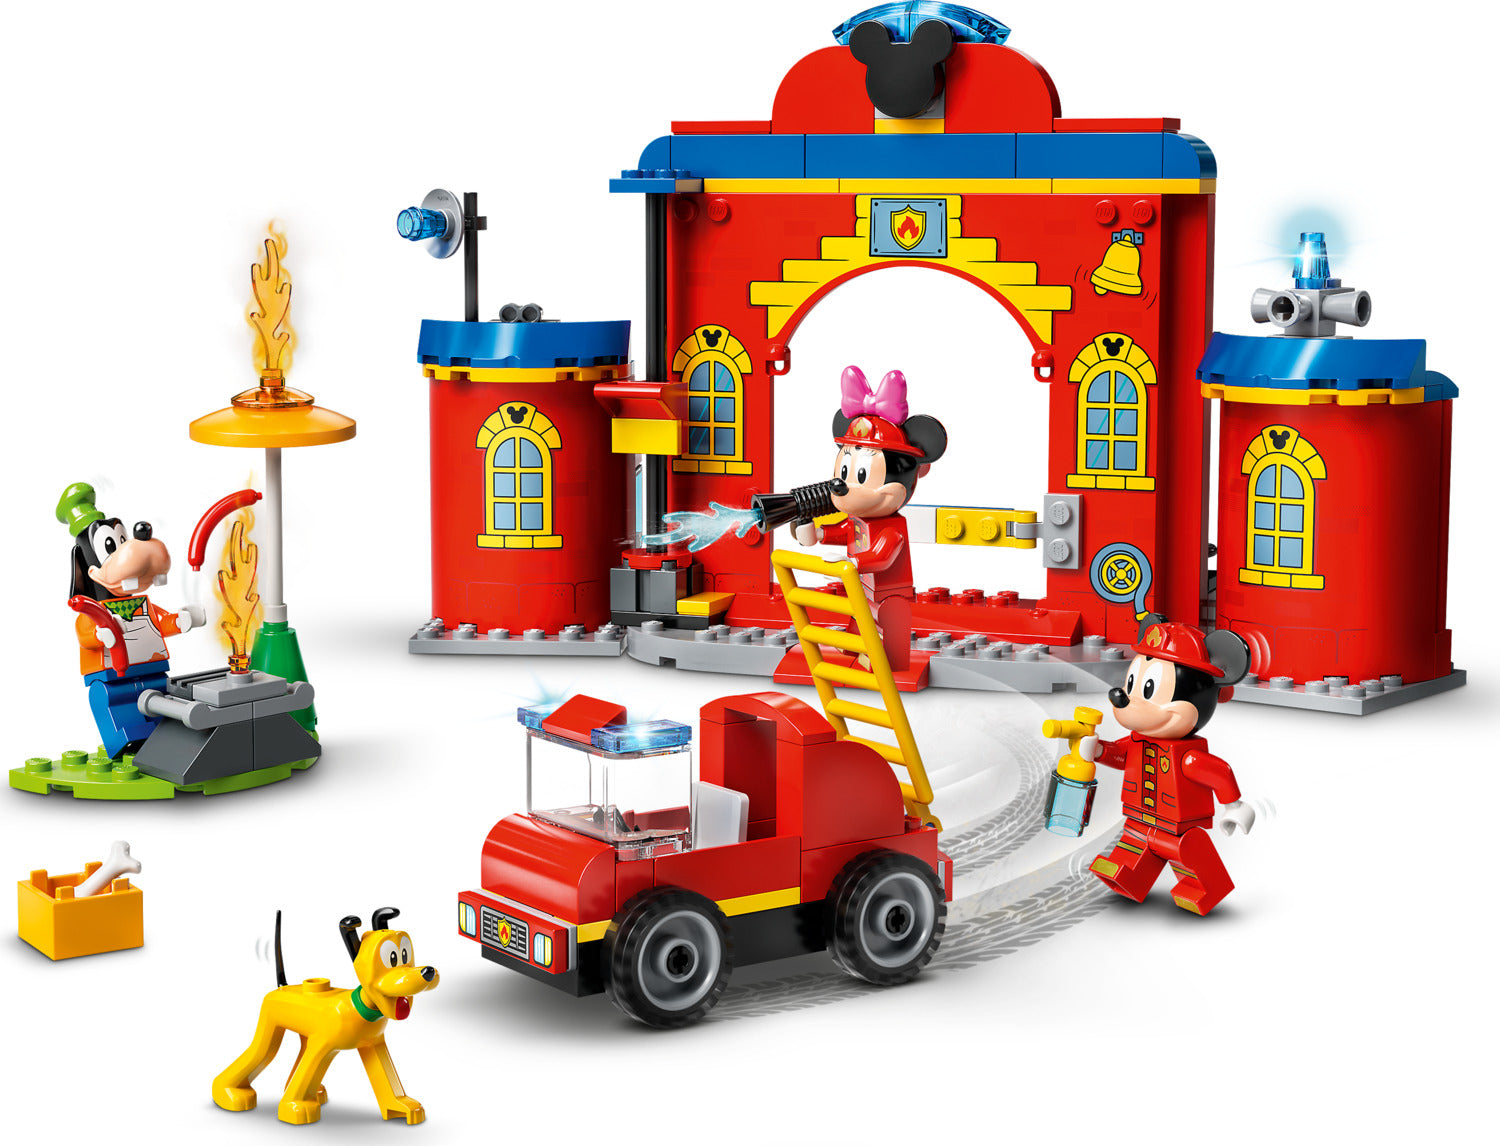 Camion de pompier 'Mickey